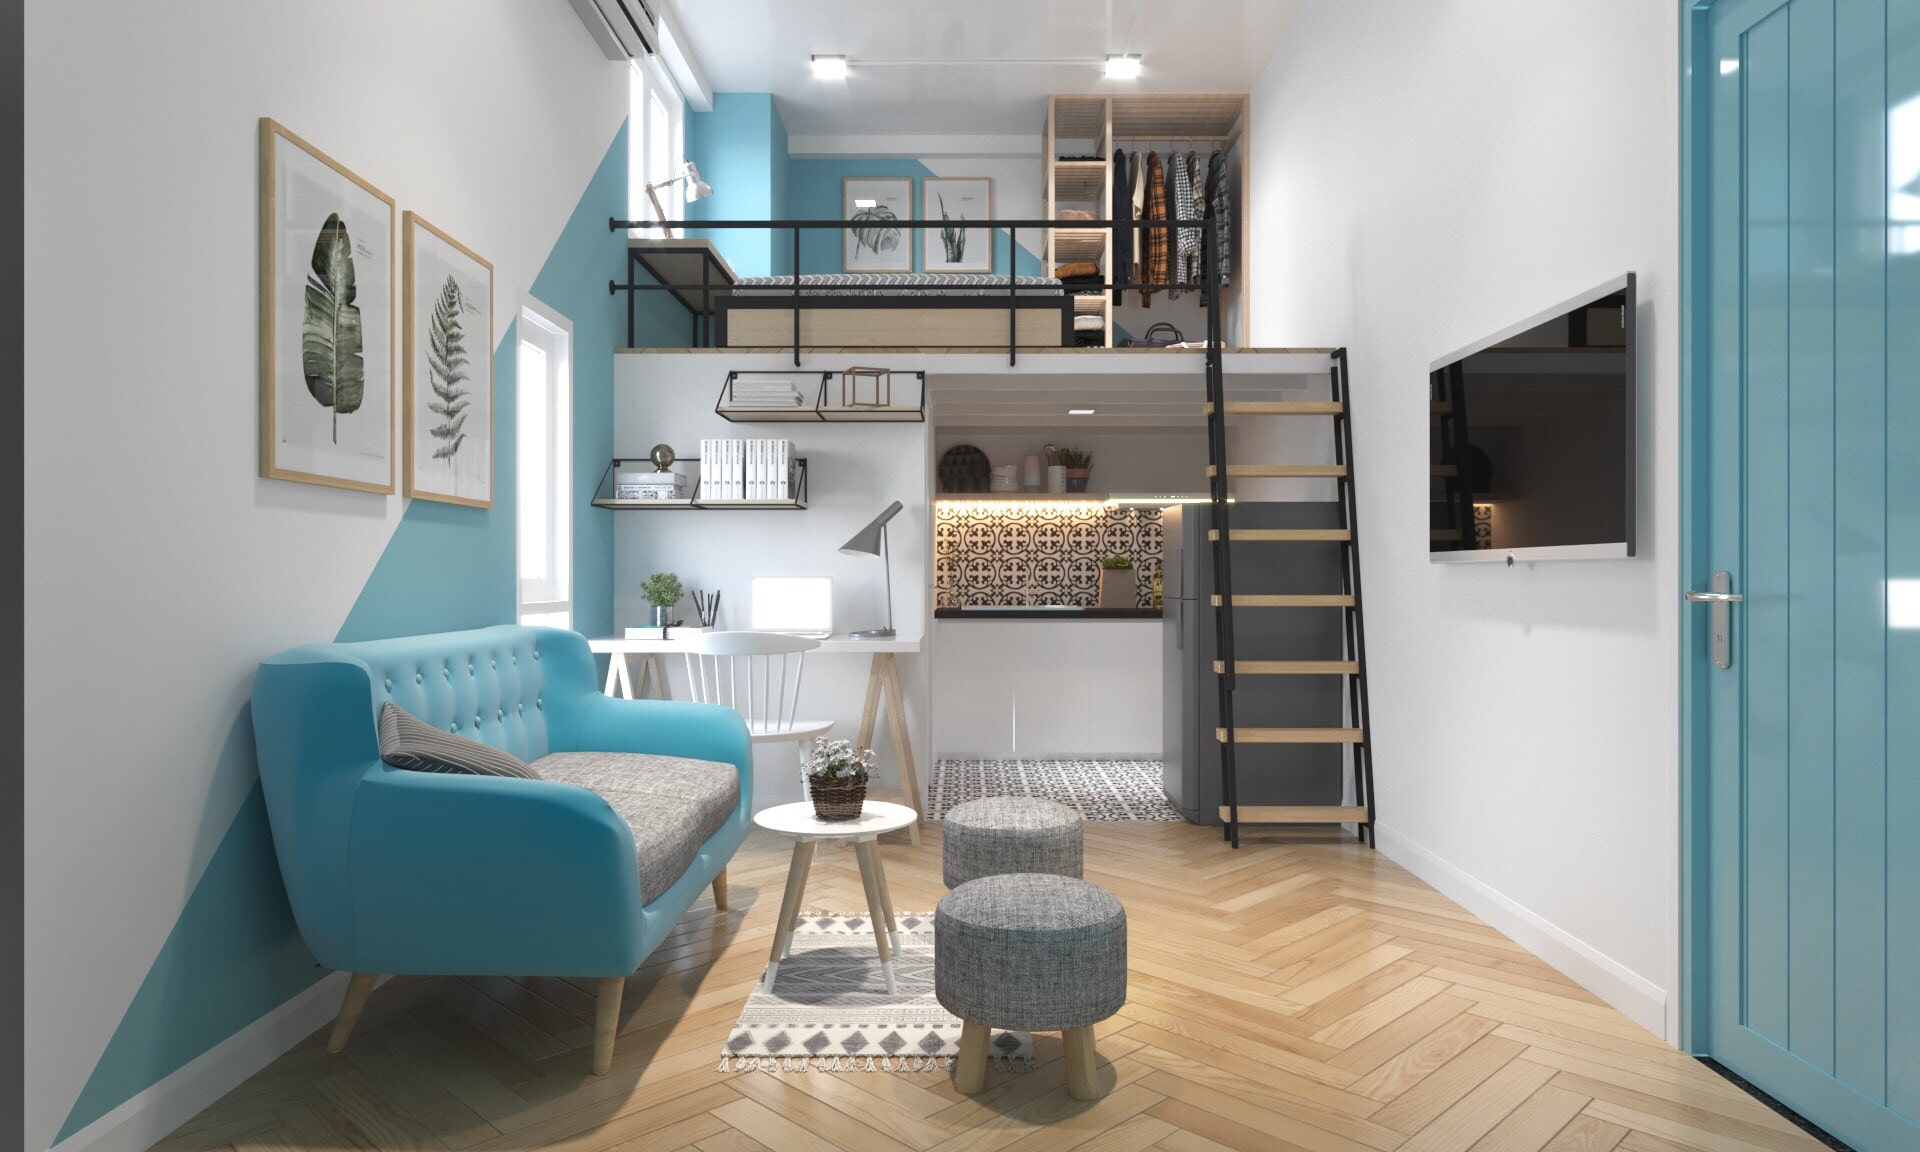 Thiết kế nội thất căn hộ chung cư mini đòi hỏi vừa phải đầy đủ tiện nghi vừa đảm bảo có không gian trống để sinh hoạt 